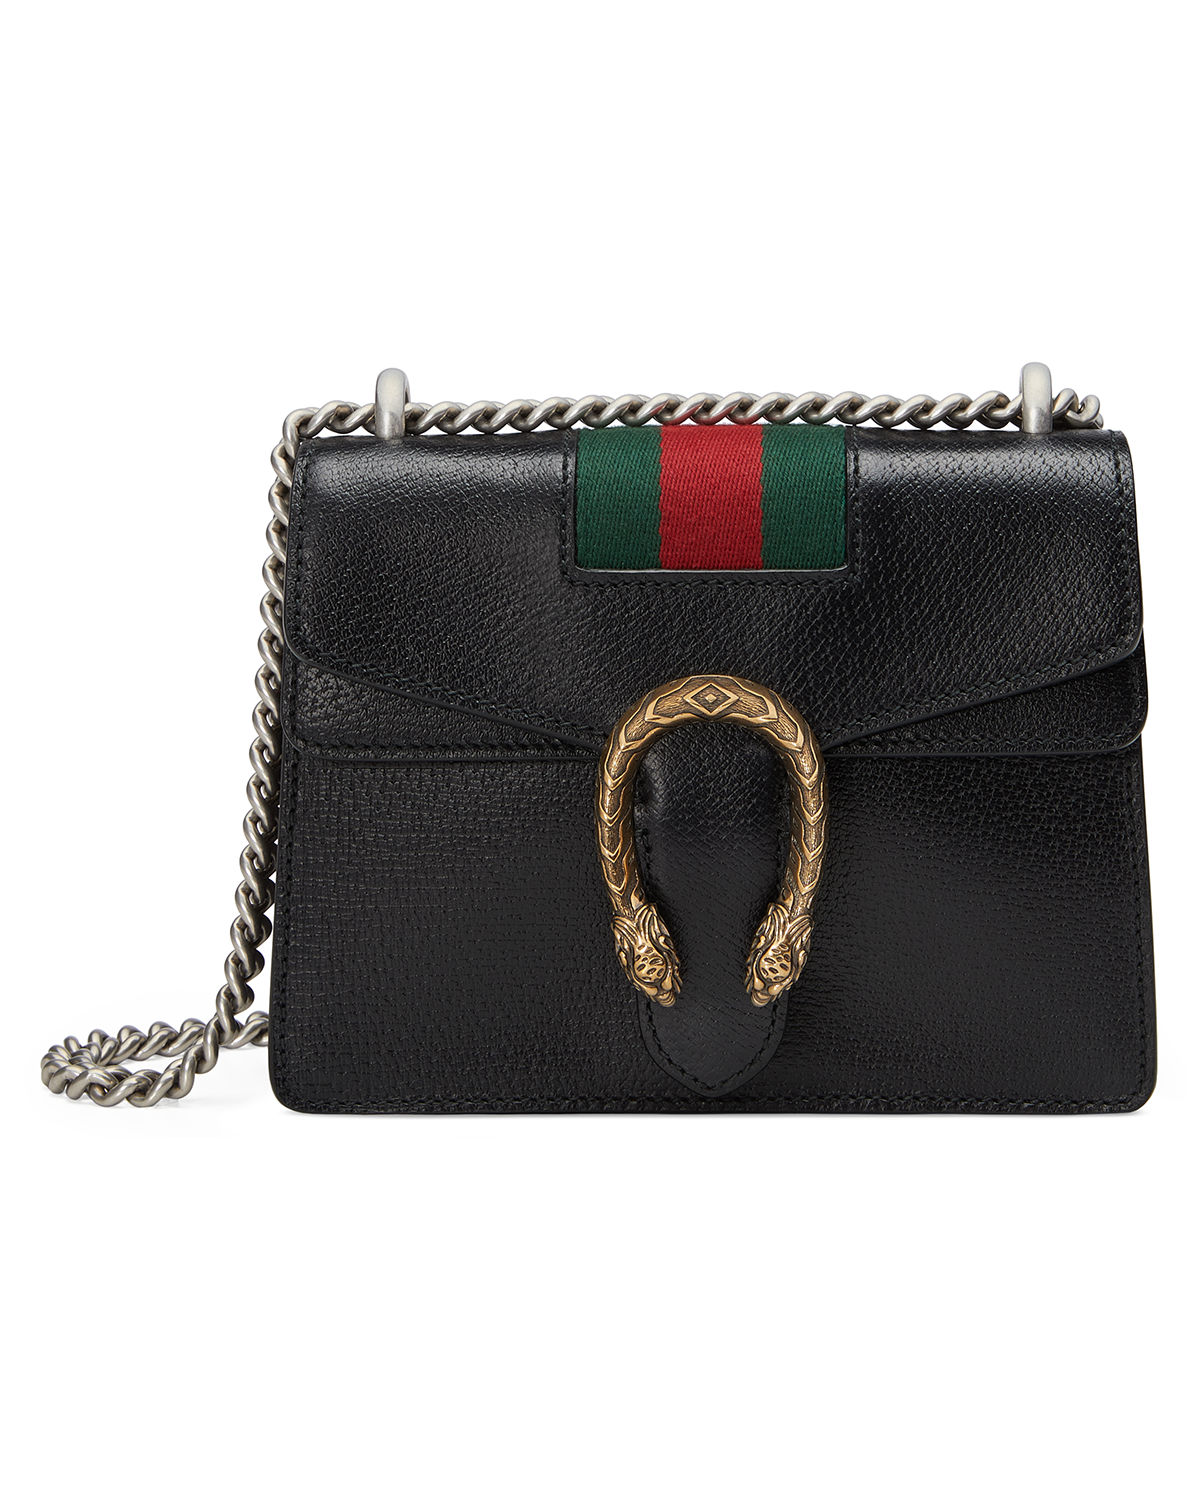 Gucci Dionysus Leather WOC Burgundy Bag – THE PURSE AFFAIR